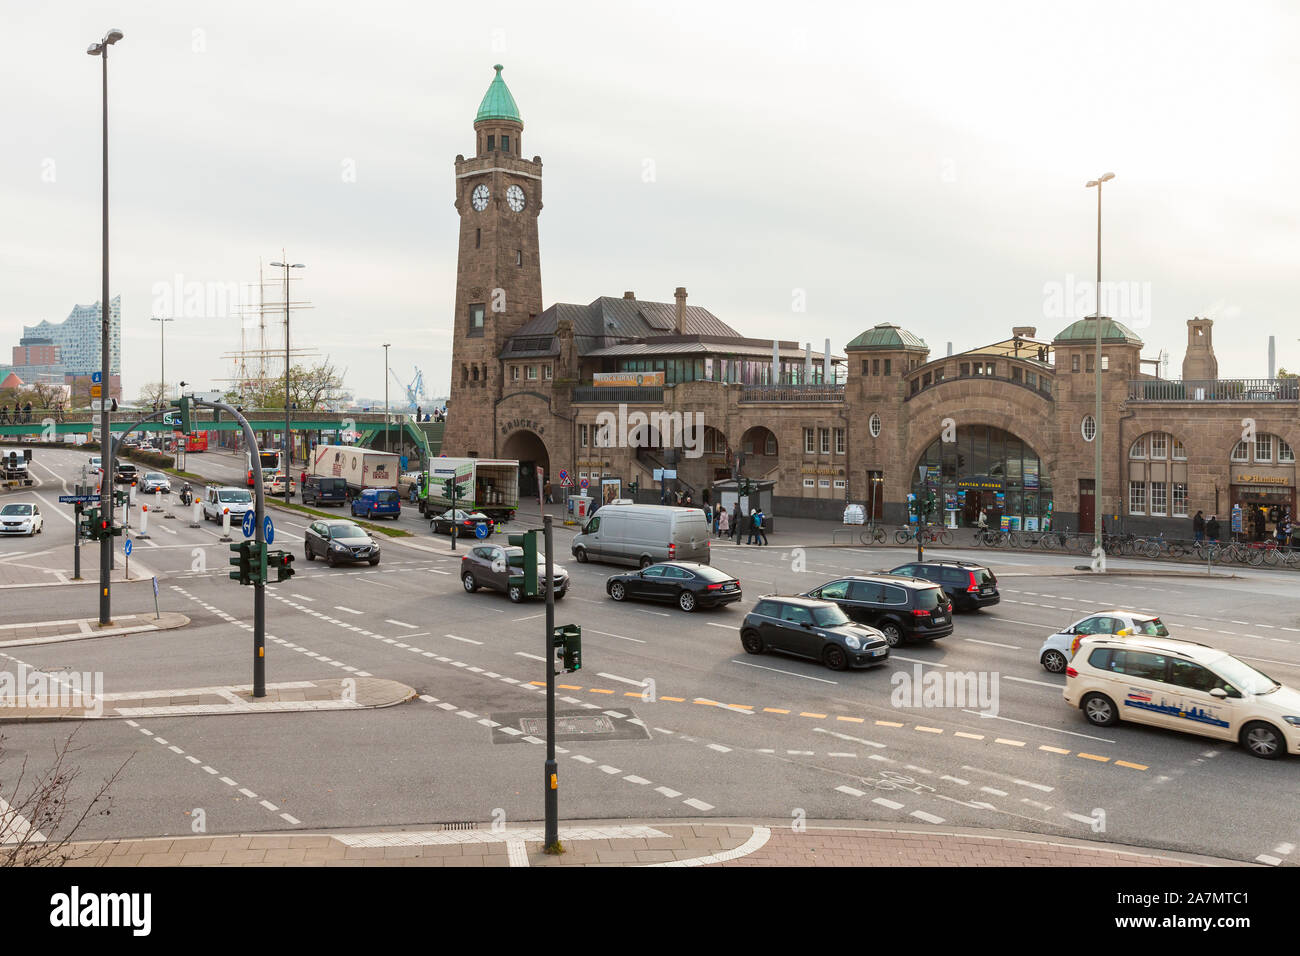 Hambourg, Allemagne - 30 novembre 2018 : Port de Hambourg vue avec l'horloge à Landungsbruecken dans la journée, les gens ordinaires et les voitures sont sur la str Banque D'Images